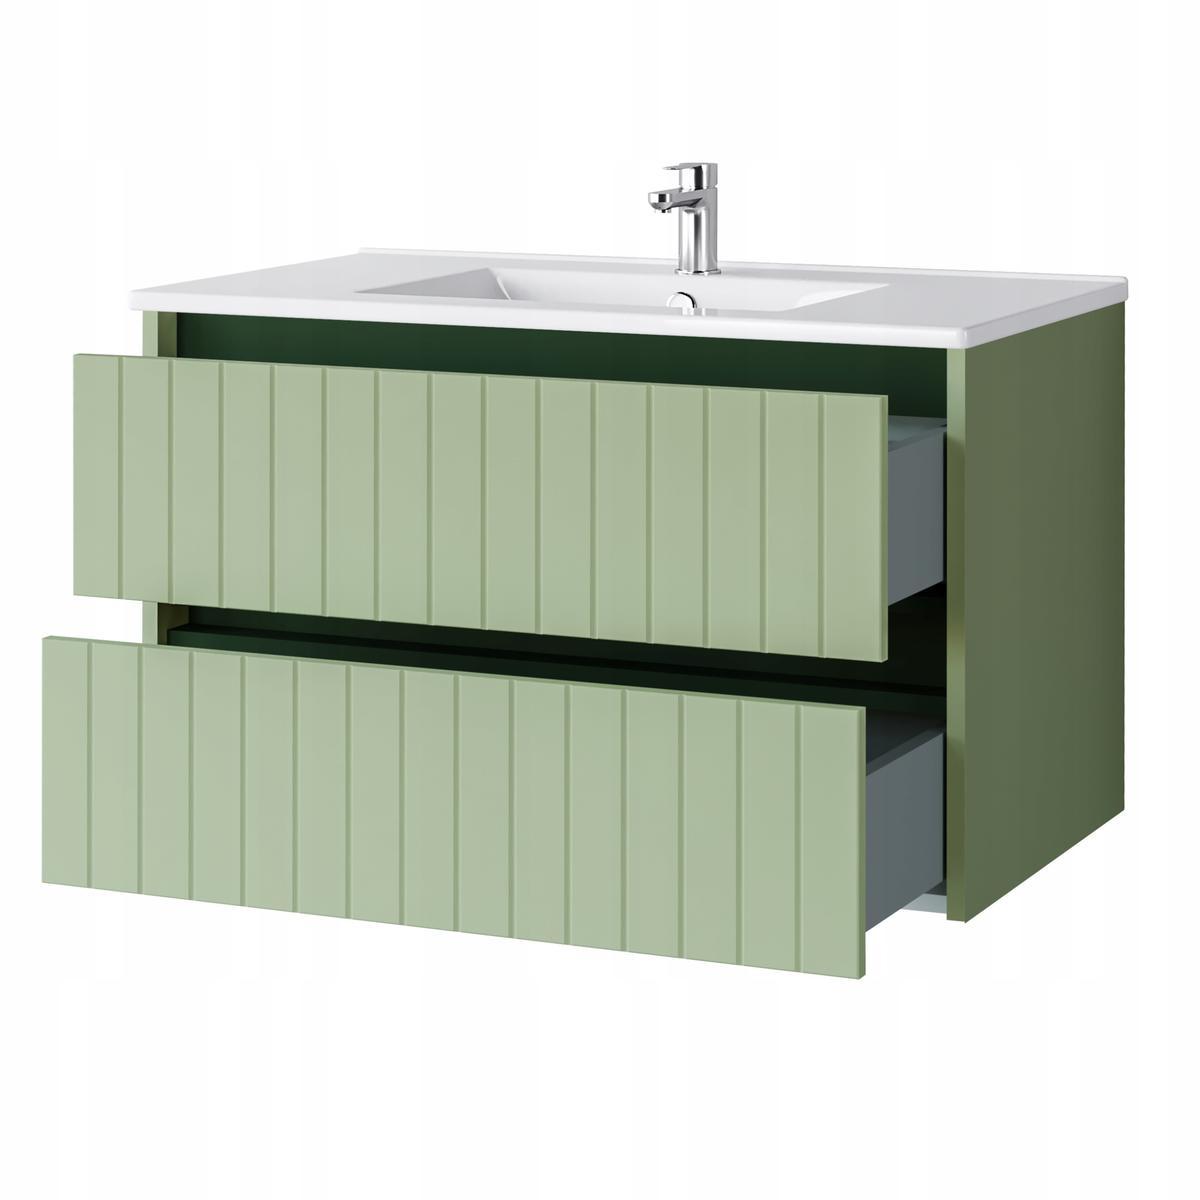 Zestaw mebli łazienkowych LINE z umywalką 80 cm + słupek 165 cm 3 elementy front MDF zielony nr. 10